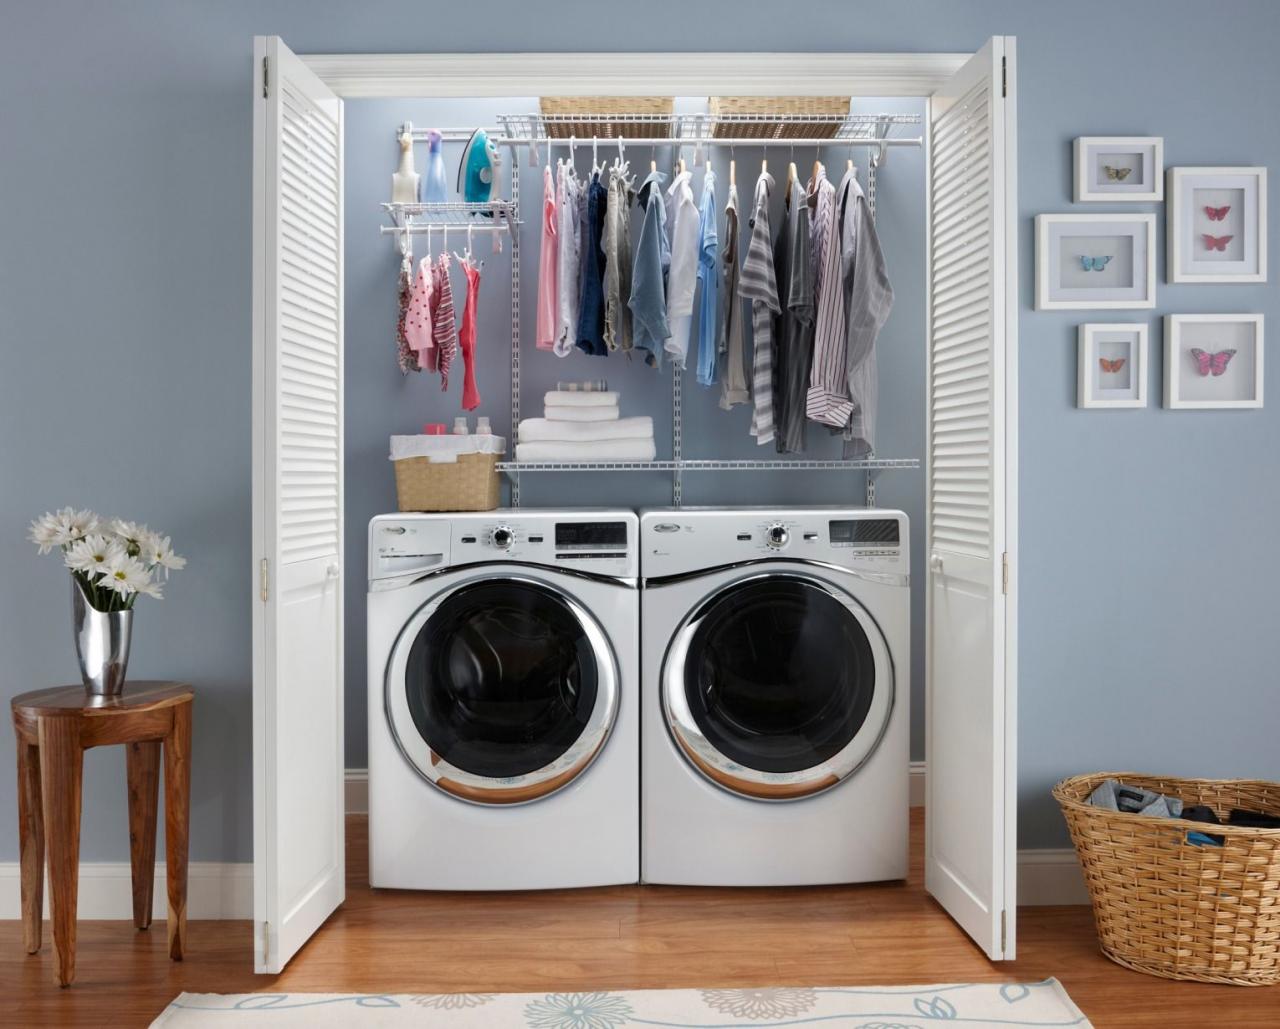 A DIY Lovely Laundry Room — ClosetMaid Laundry